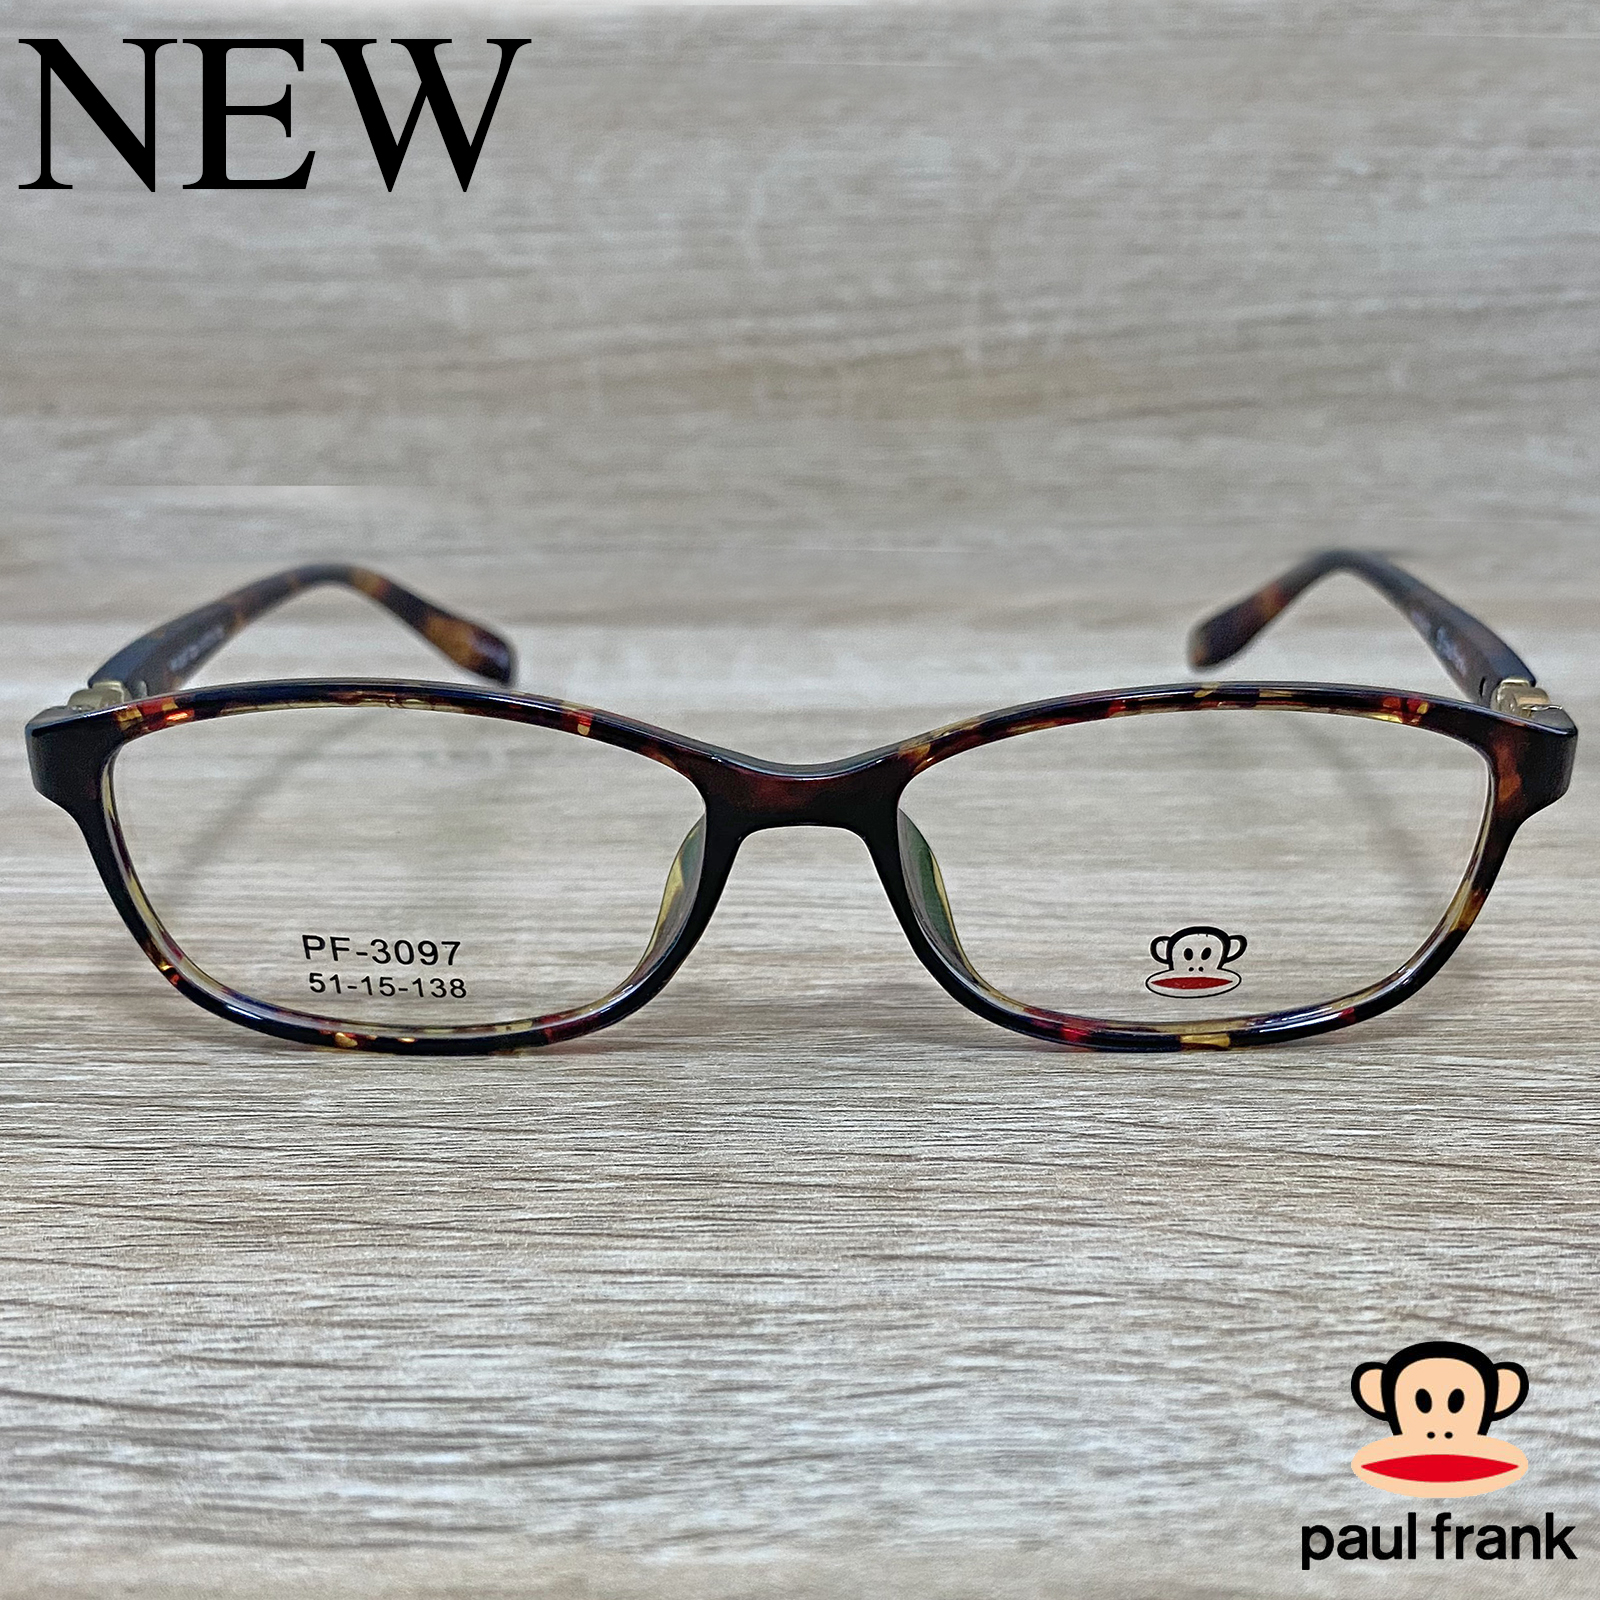 Fashion กรอบแว่นตา สำหรับตัดเลนส์ แว่นตาชาย หญิง แว่นตา  รุ่น Paul Frank 3097 สีน้ำตาลกละ กรอบเต็ม ทรงเหลี่ยม ขาข้อต่อ วัสดุ TR 90 รับตัดเลนส์ทุกชนิด